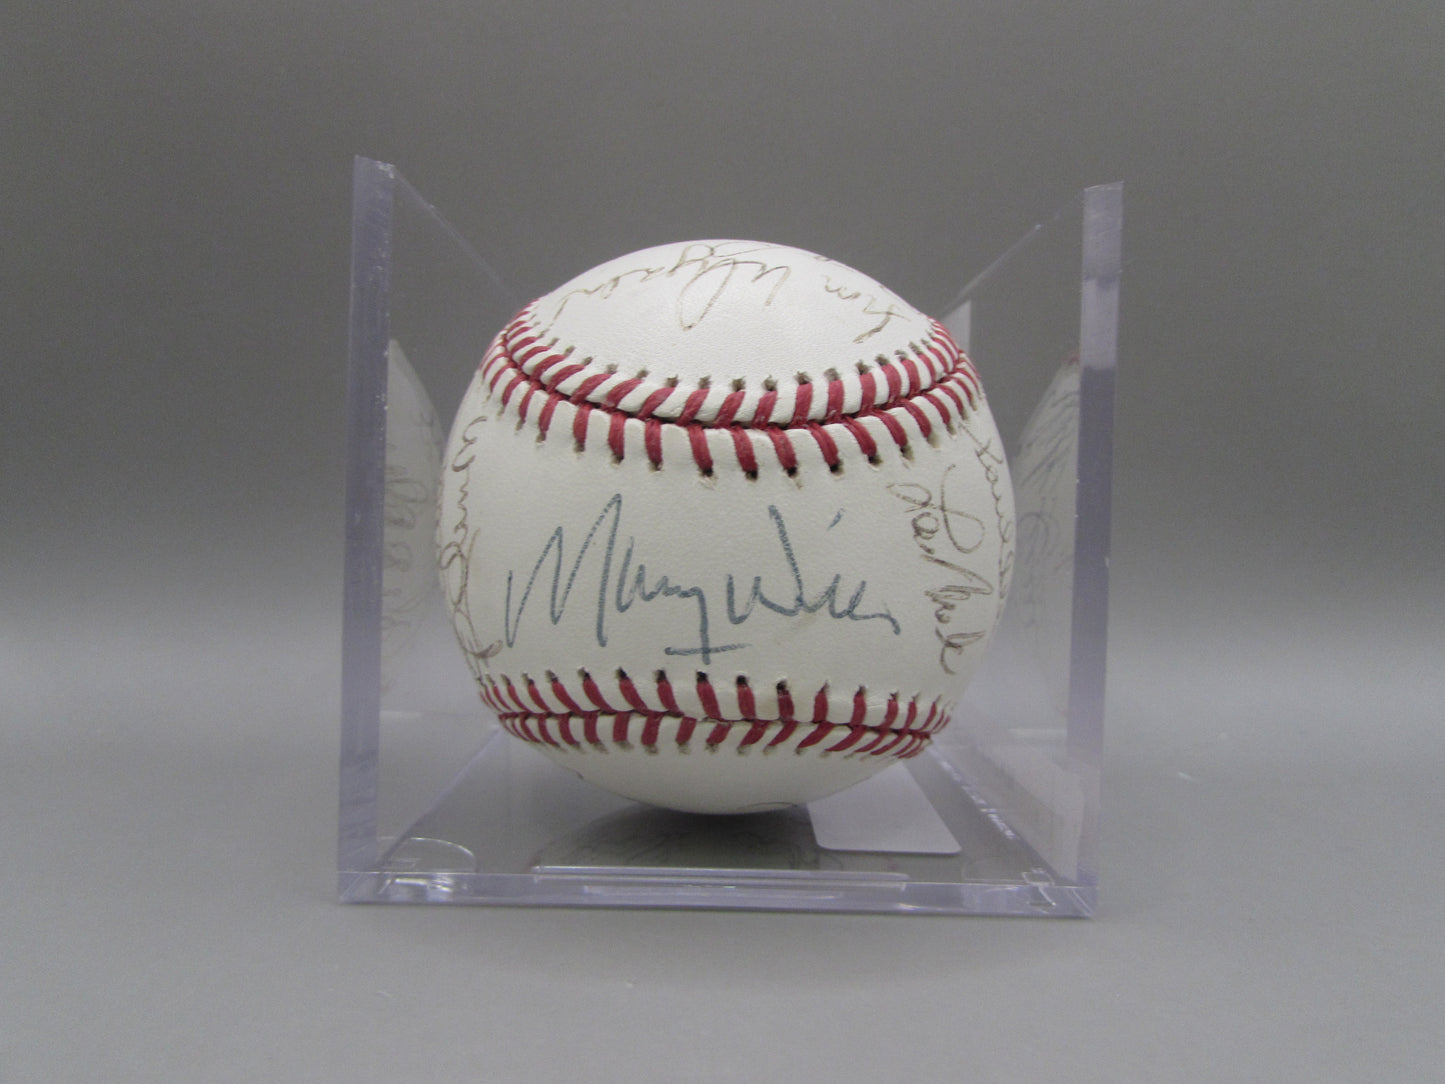 Maury Wills signed baseball